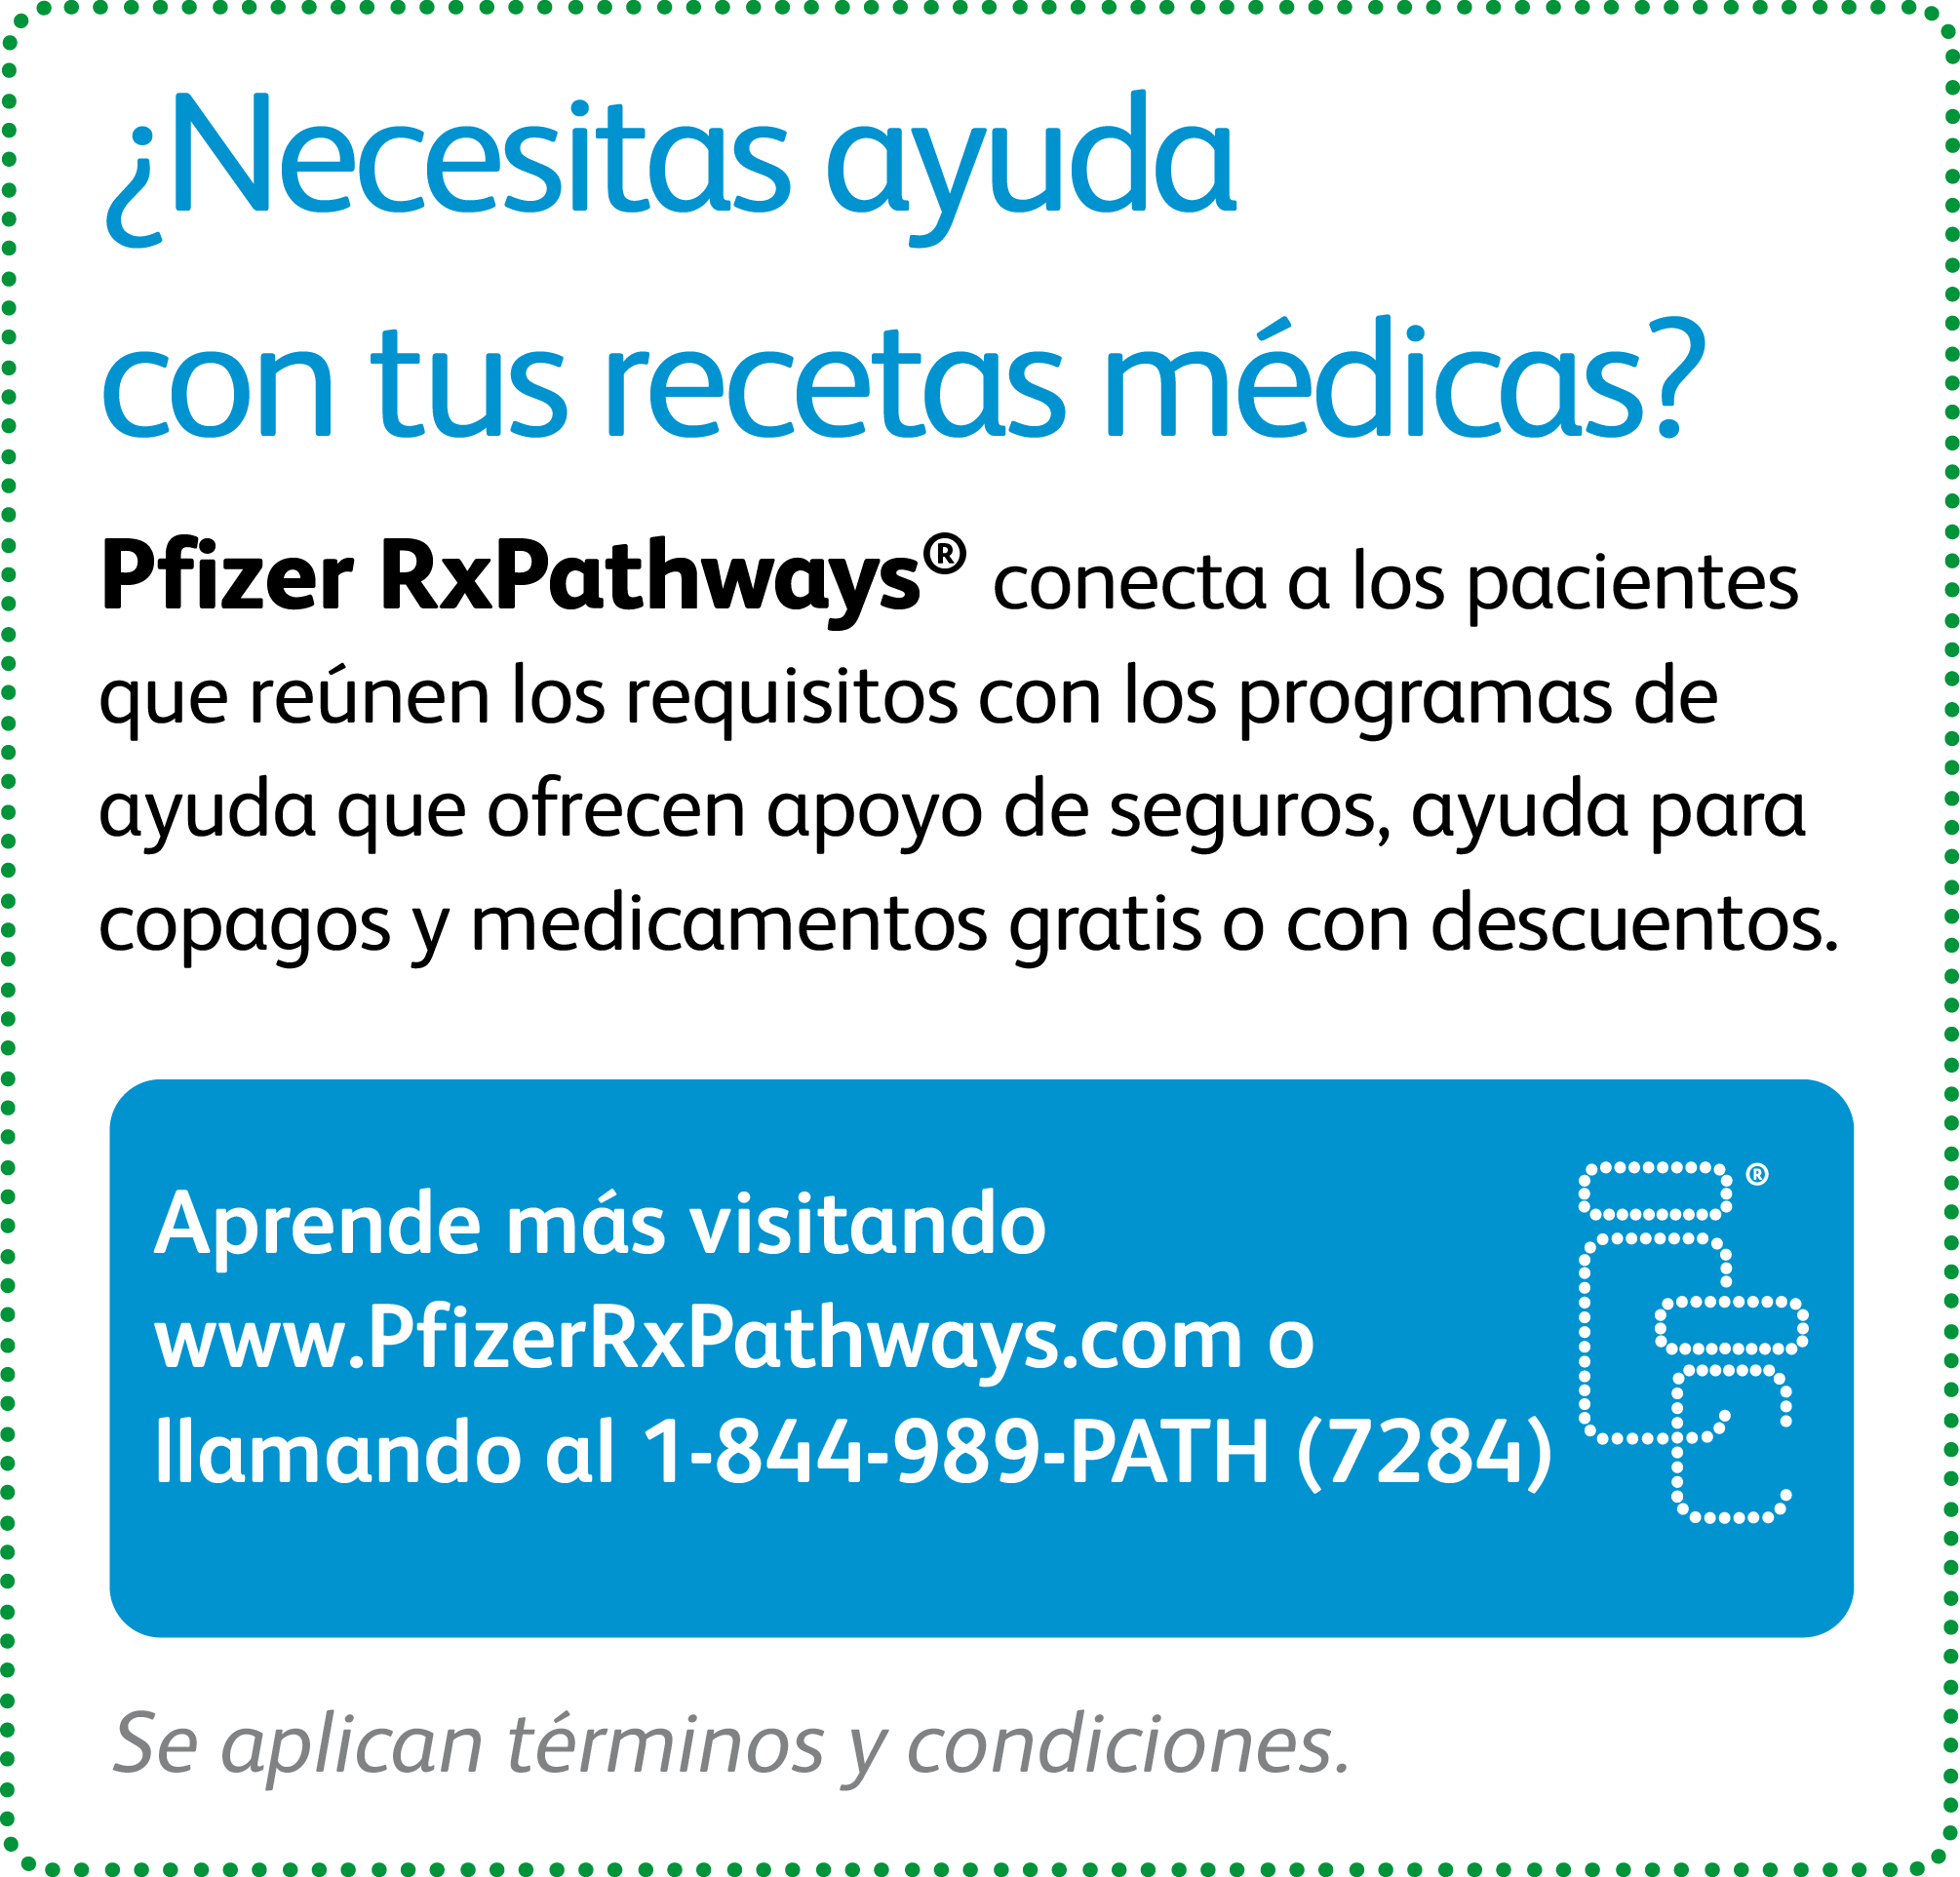 Pfizer RxPathways ofrece a los pacientes que reúnen los requisitos programas de ayuda con su seguro, copago y medicamentos con receta.